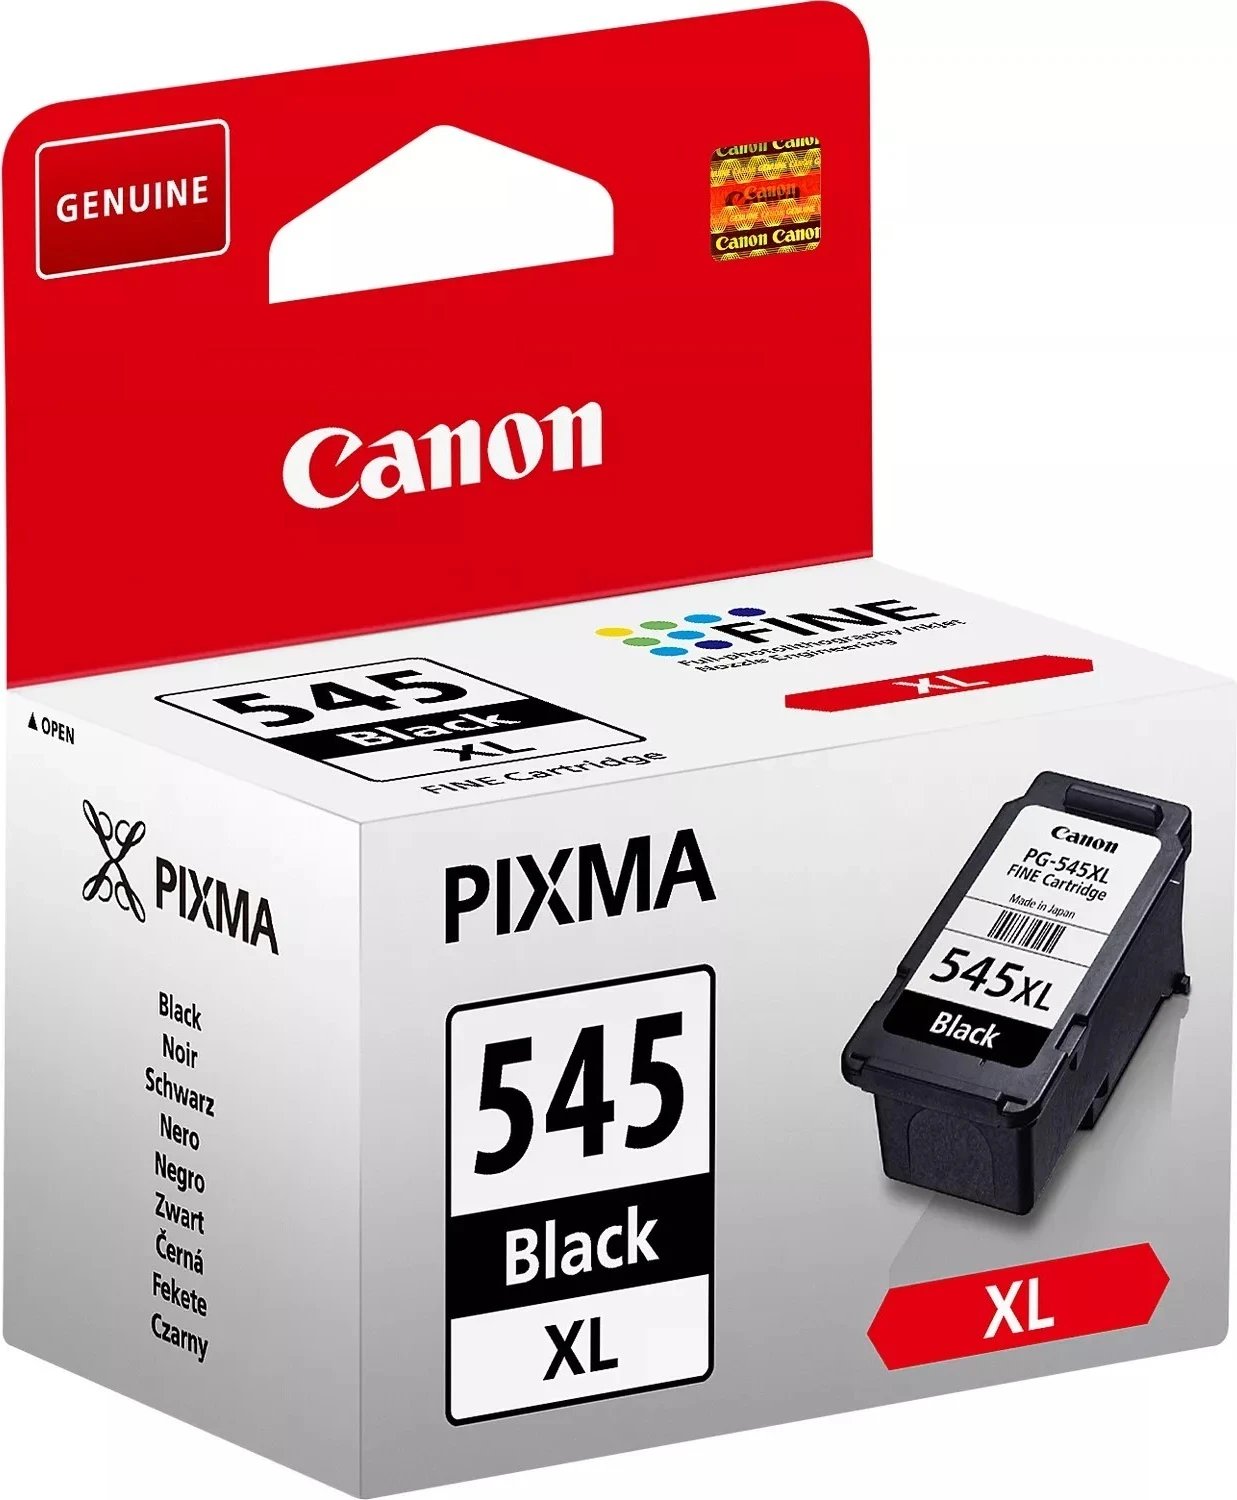 Ngjyrë për printer Canon PG 545, XL i zi